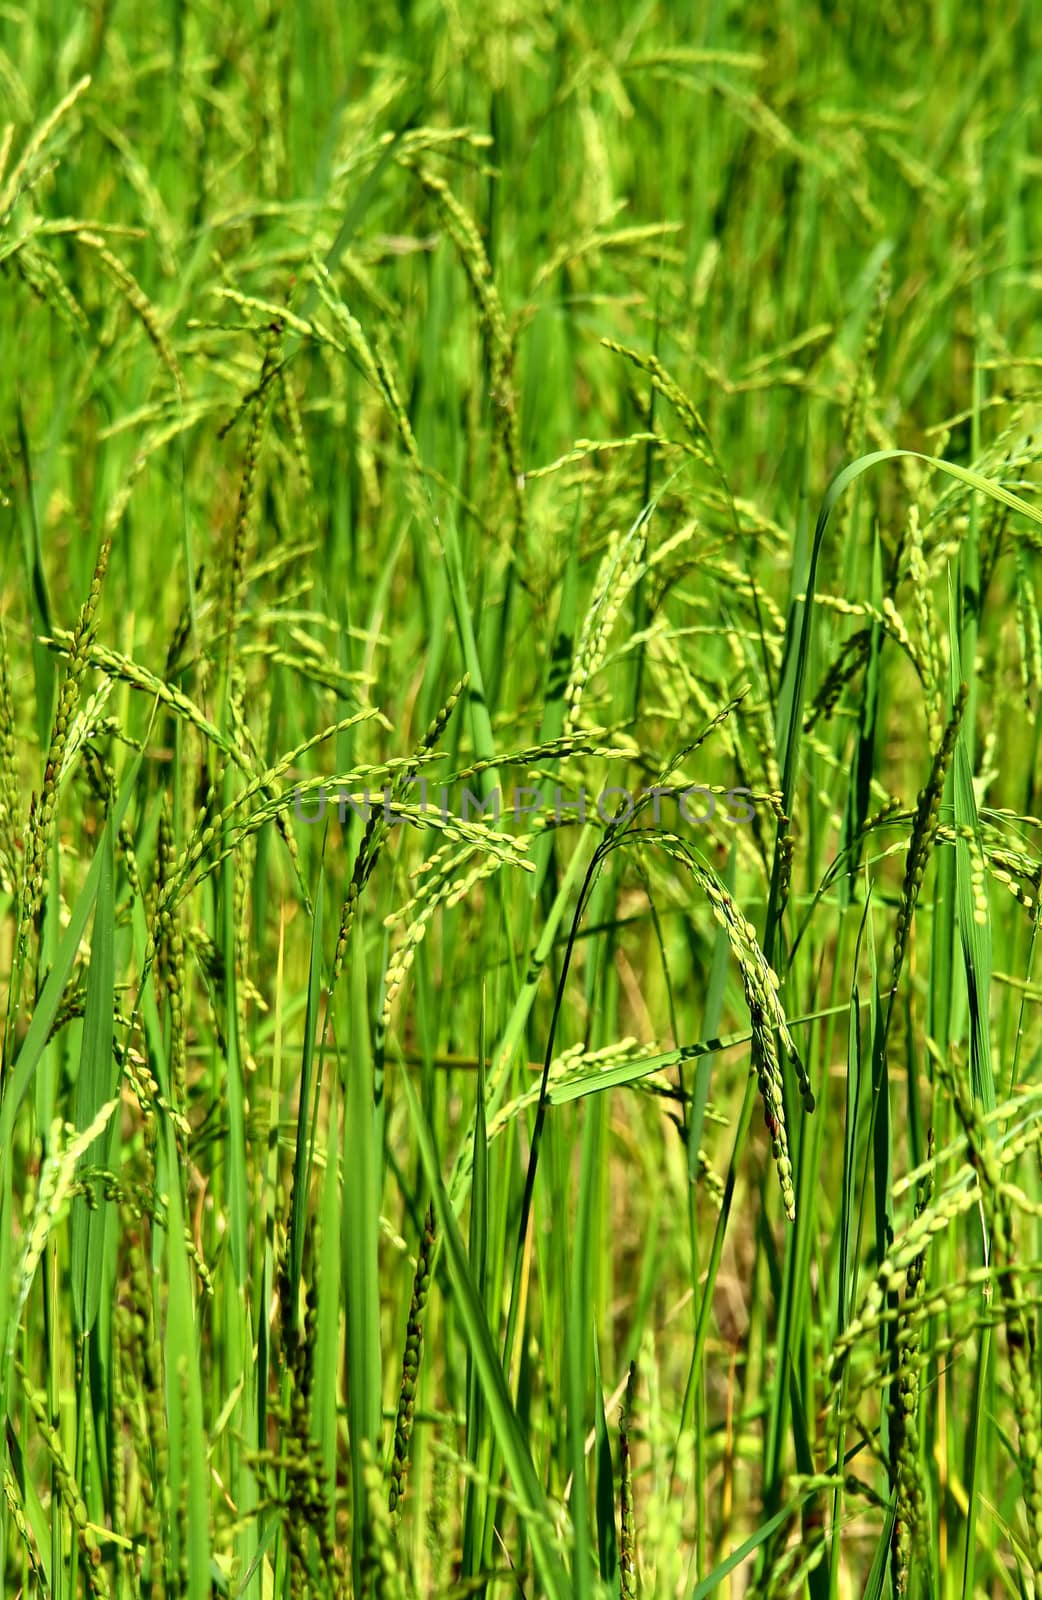 Green rice field texture wallpaper, Nepal